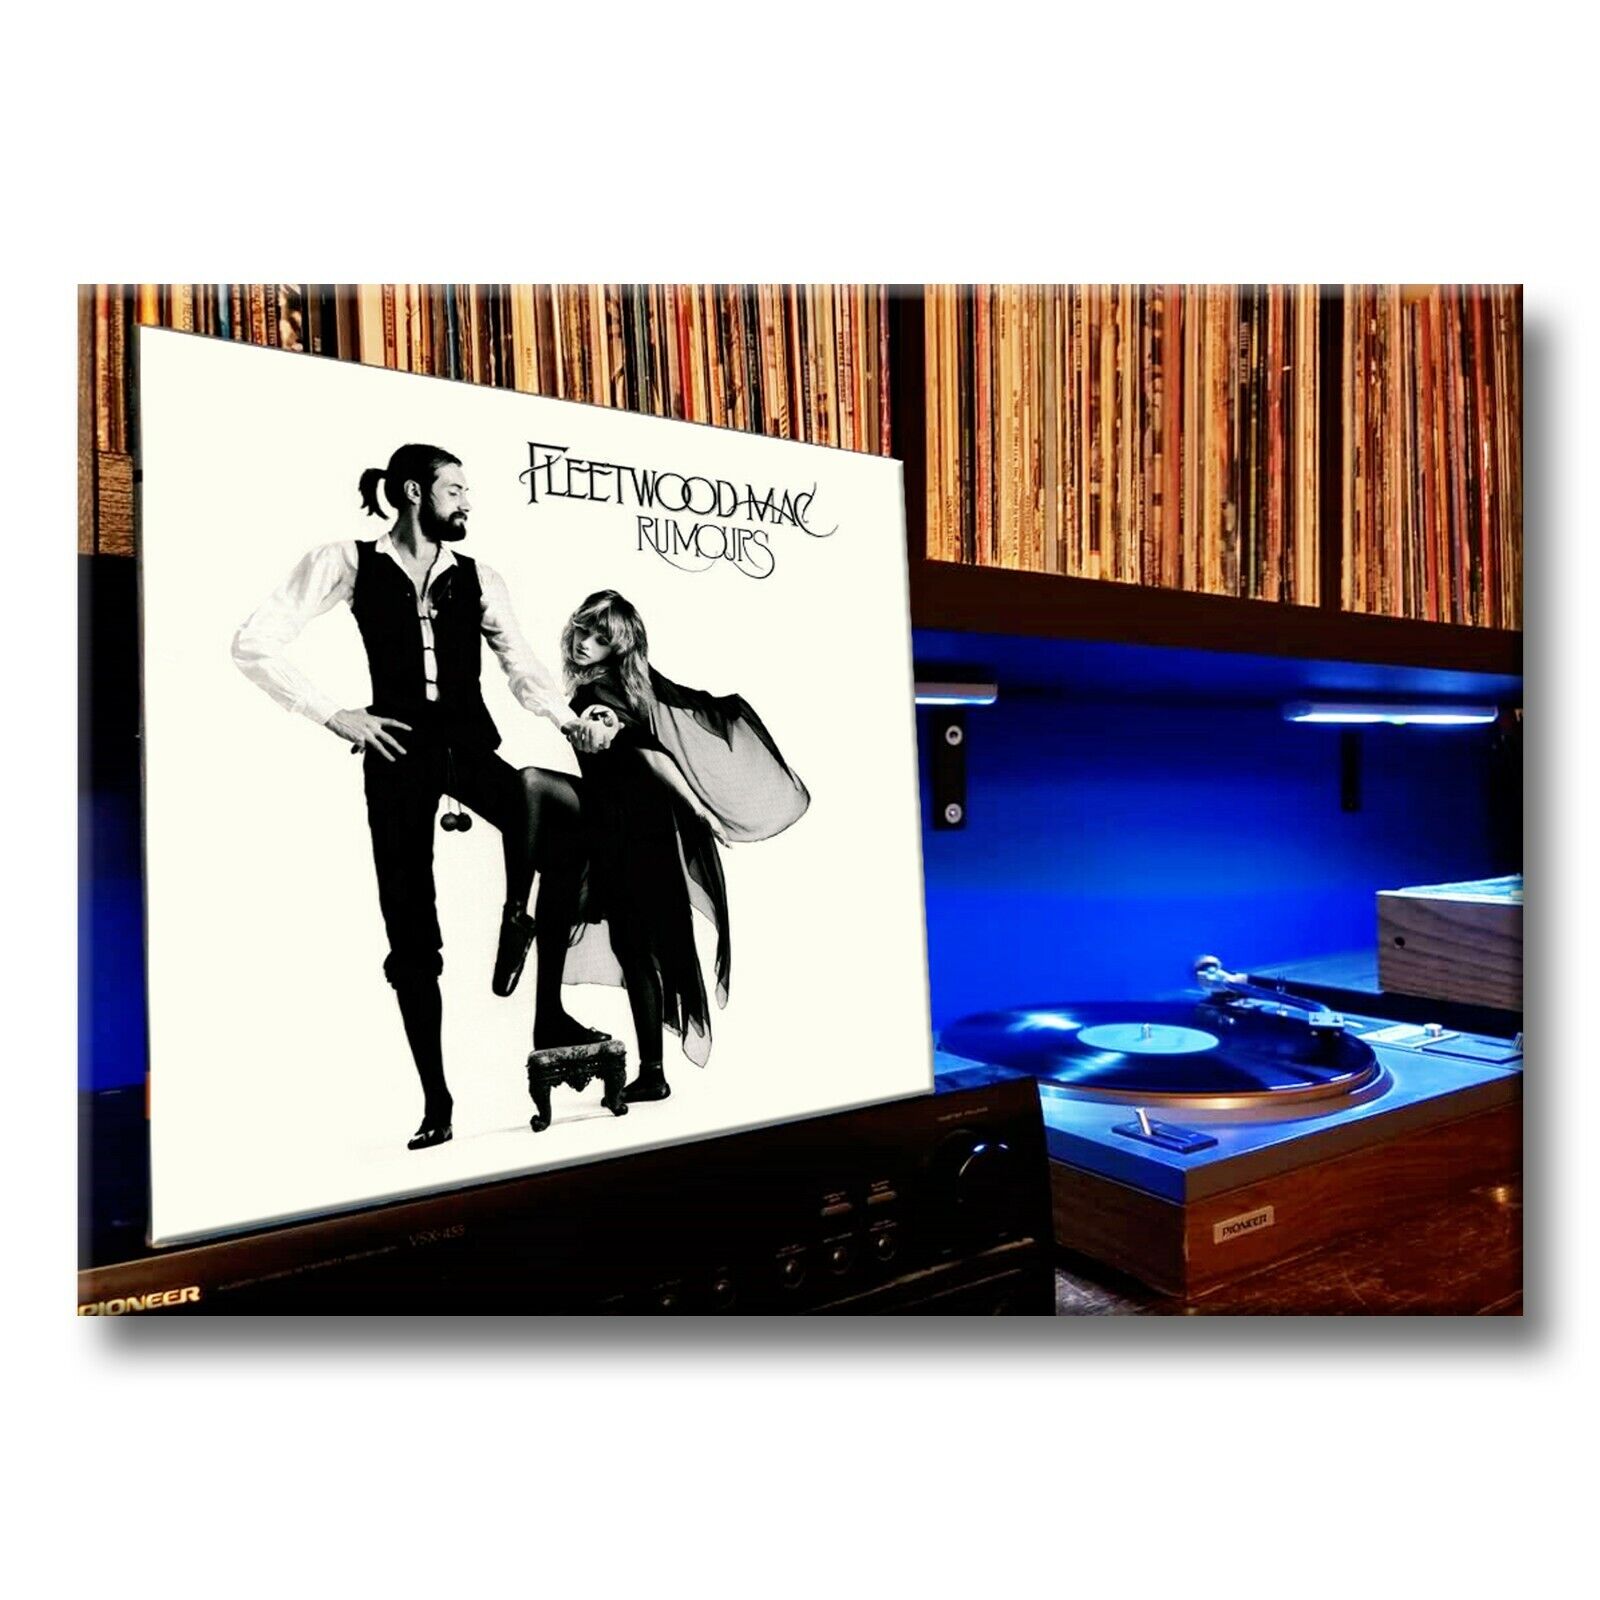 FLEETWOOD MAC Rumors Classic Album 3.5 inches x 2.5 inches FRIDGE MAGNET